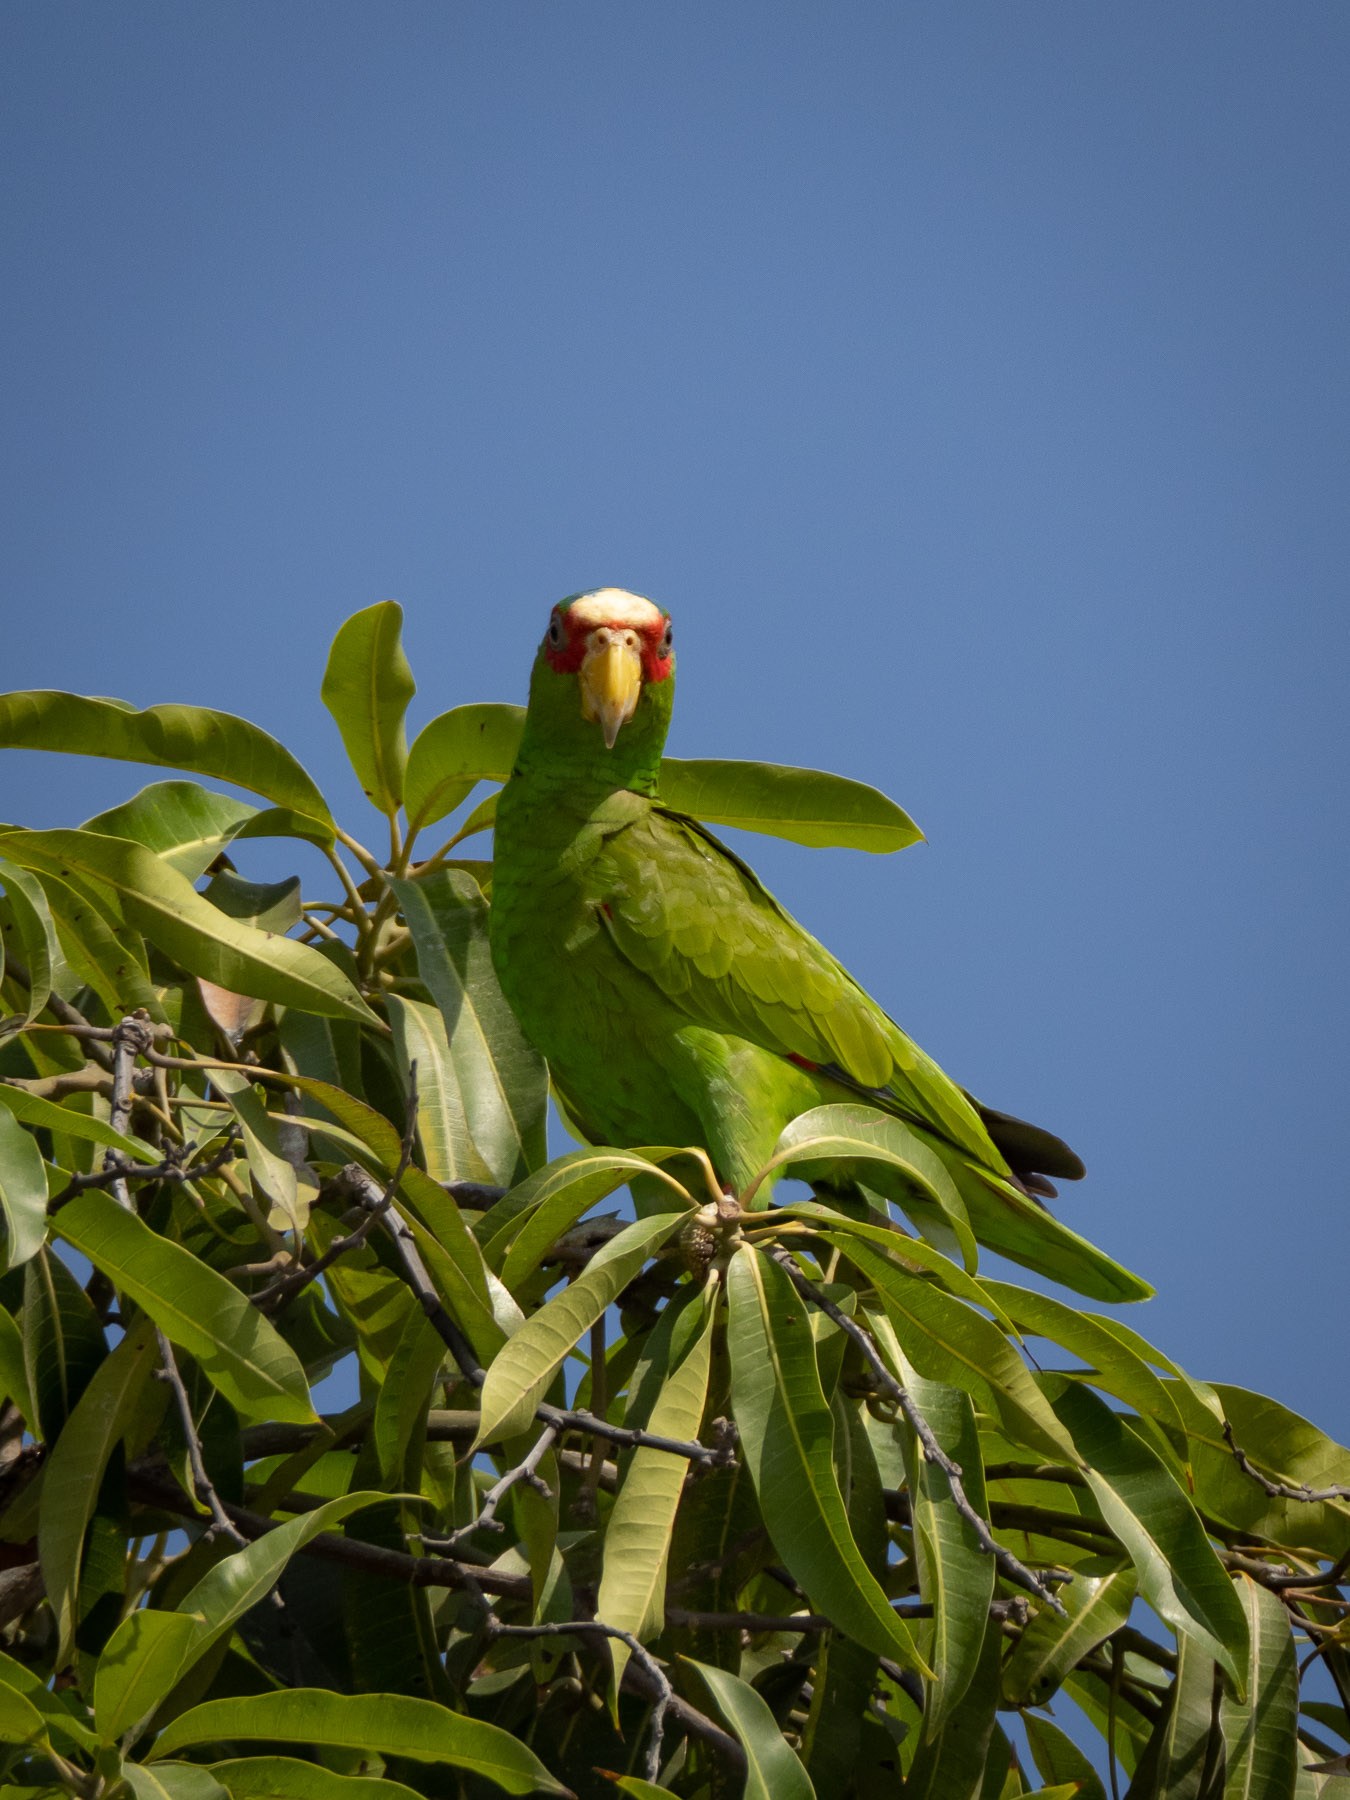 Небольшой зелёный попугай, обитающий в тропических лесах центральной Америки. Тихоокеанское побережье Мексики, Хуатулко, март 2021. Автор фото: Сутормина Марина